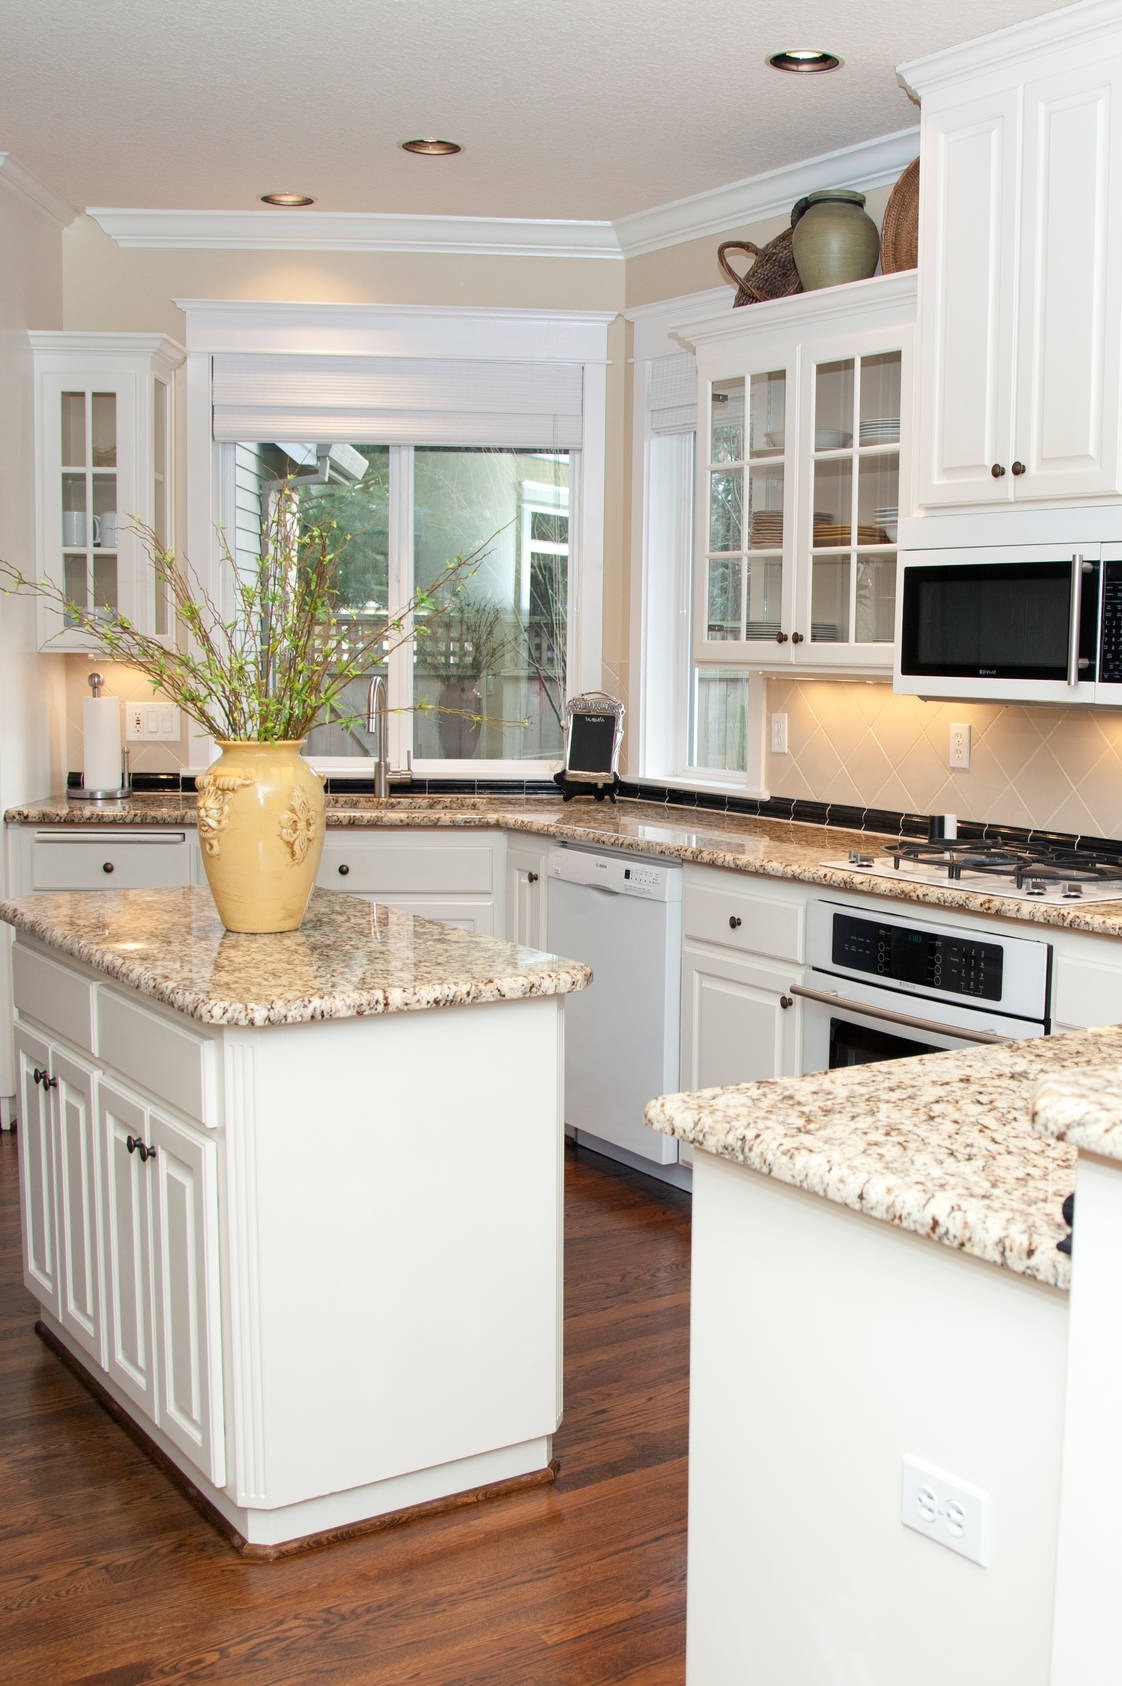 White Cabinets Cream Tile Backsplash Giallo Fiesta Granite Countertops Dark Hardwood Floors